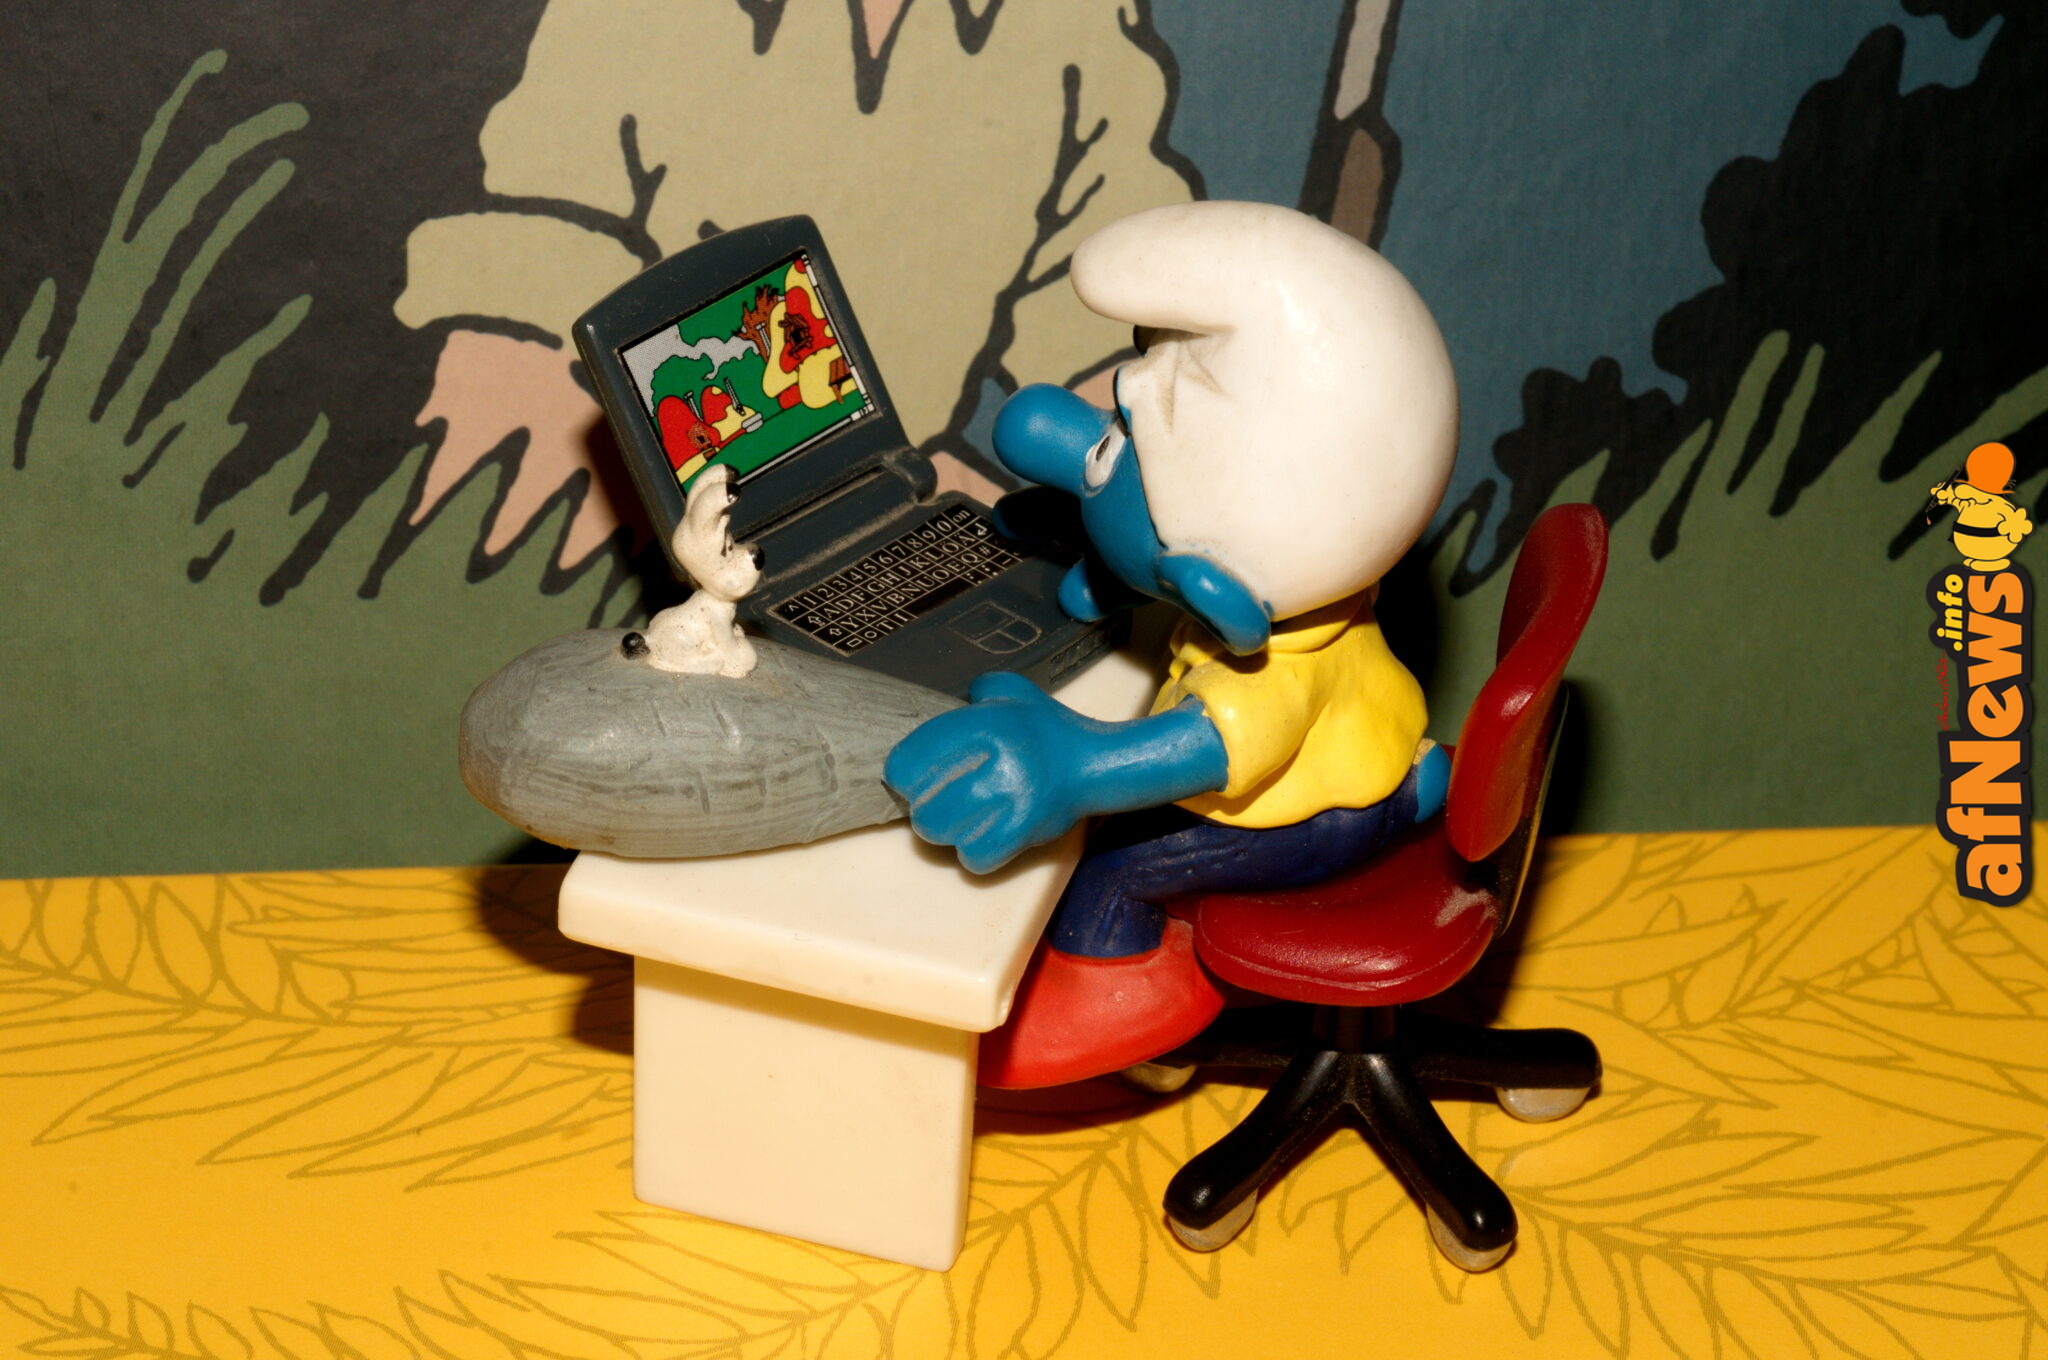 Fumetto su Fumetto, serie fotografica di Gianfranco Goria. Puffo al computer su copertina e cofanetto di Les Tribulations de Tintin au Congo, ed. Moulinsart, con Idefix su menhir come mouse.